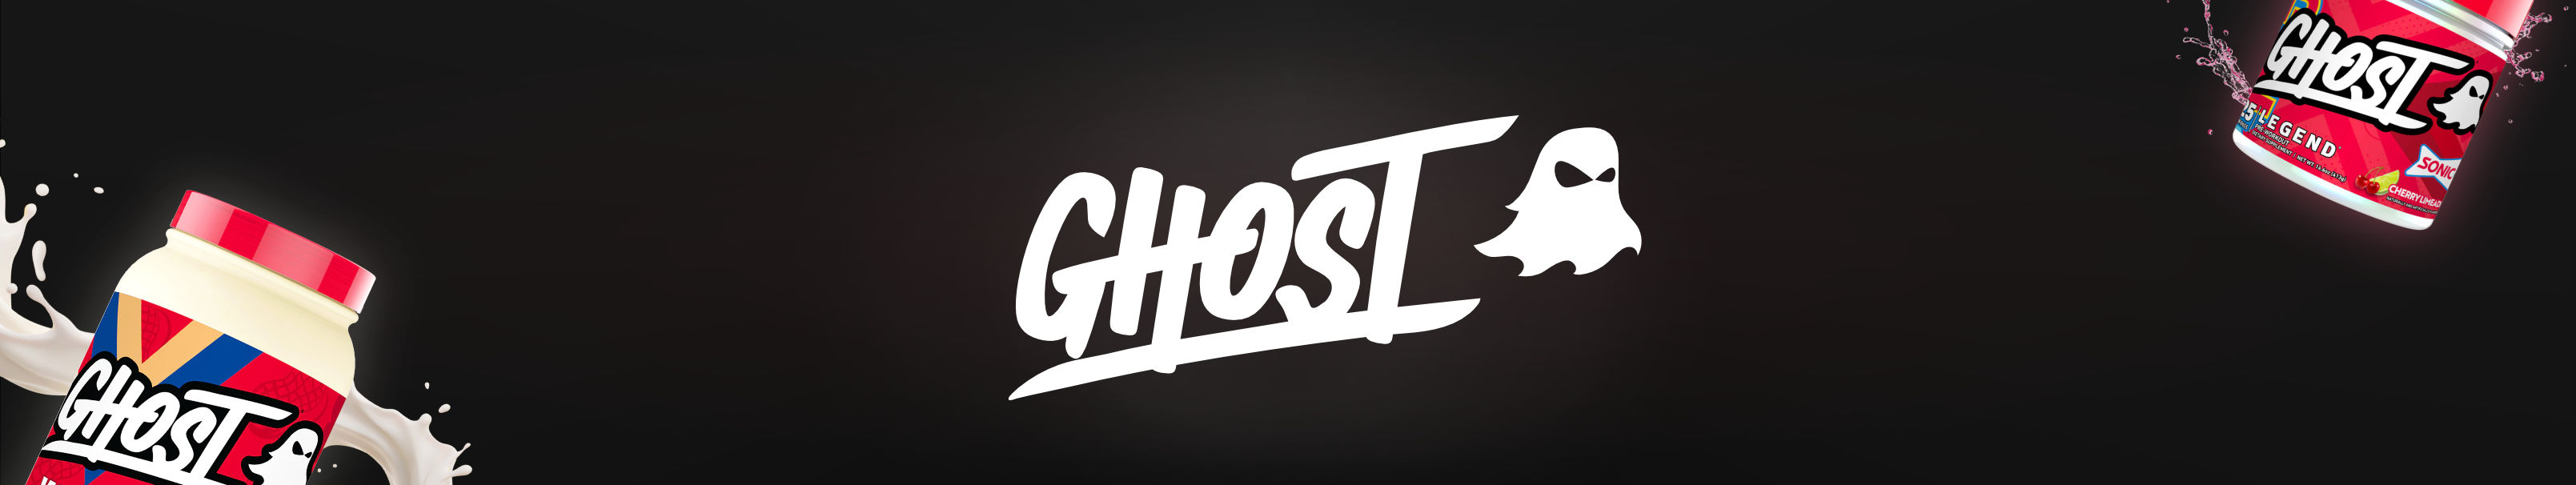 Banner für Ghost